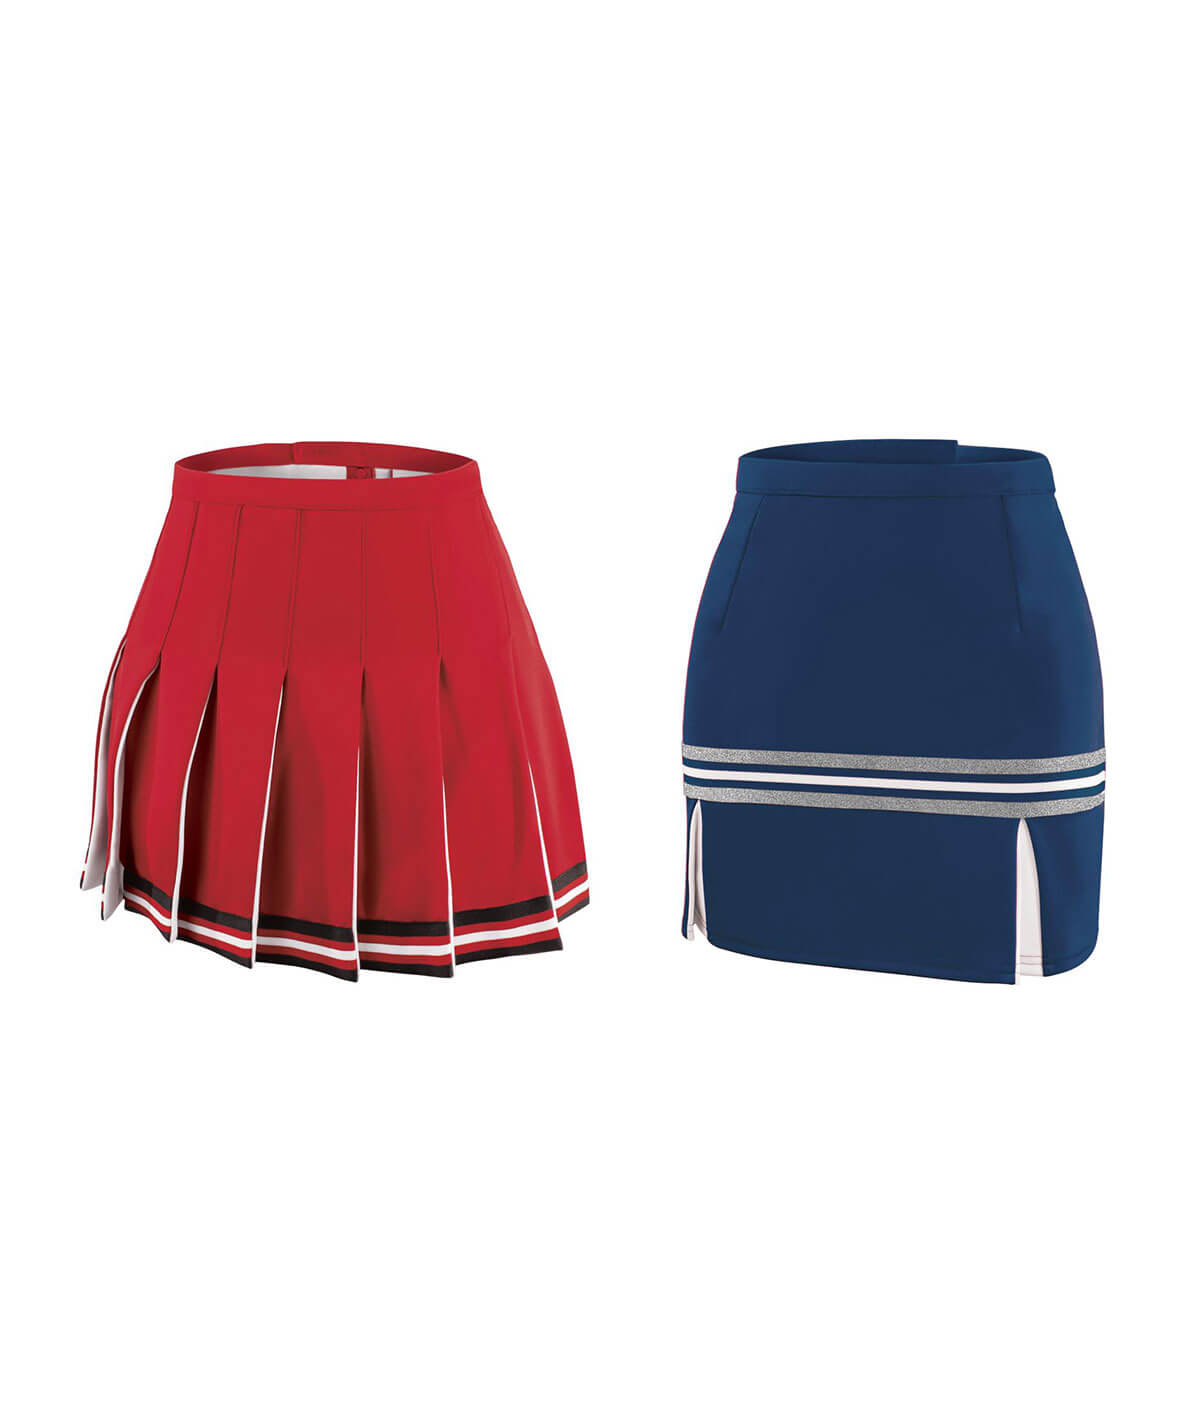 GK Sideline Skirt Options